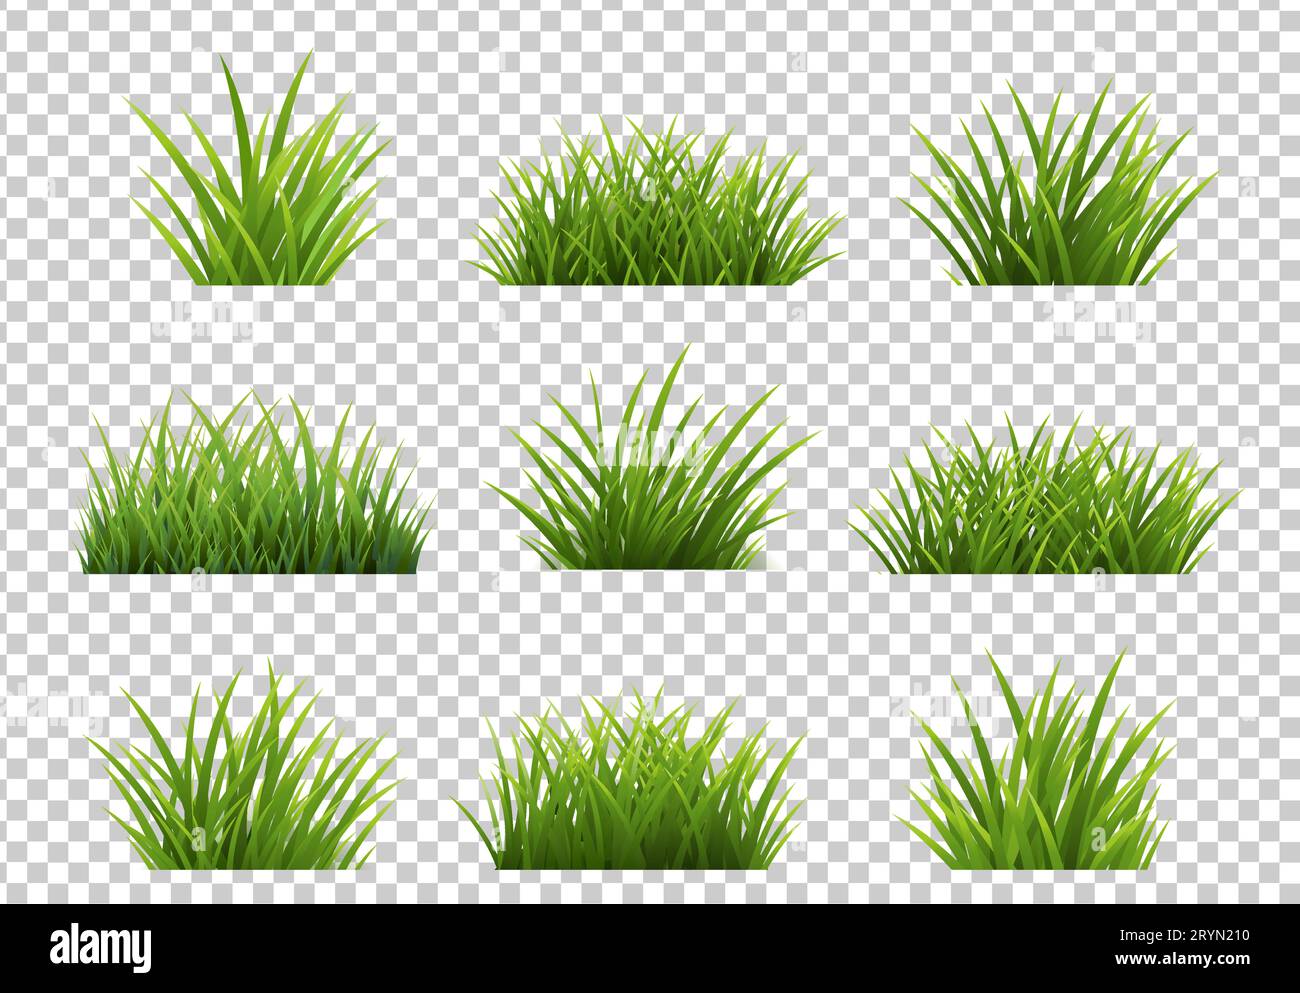 Fond transparent isolé d'herbe verte avec maillage dégradé, illustration vectorielle Illustration de Vecteur